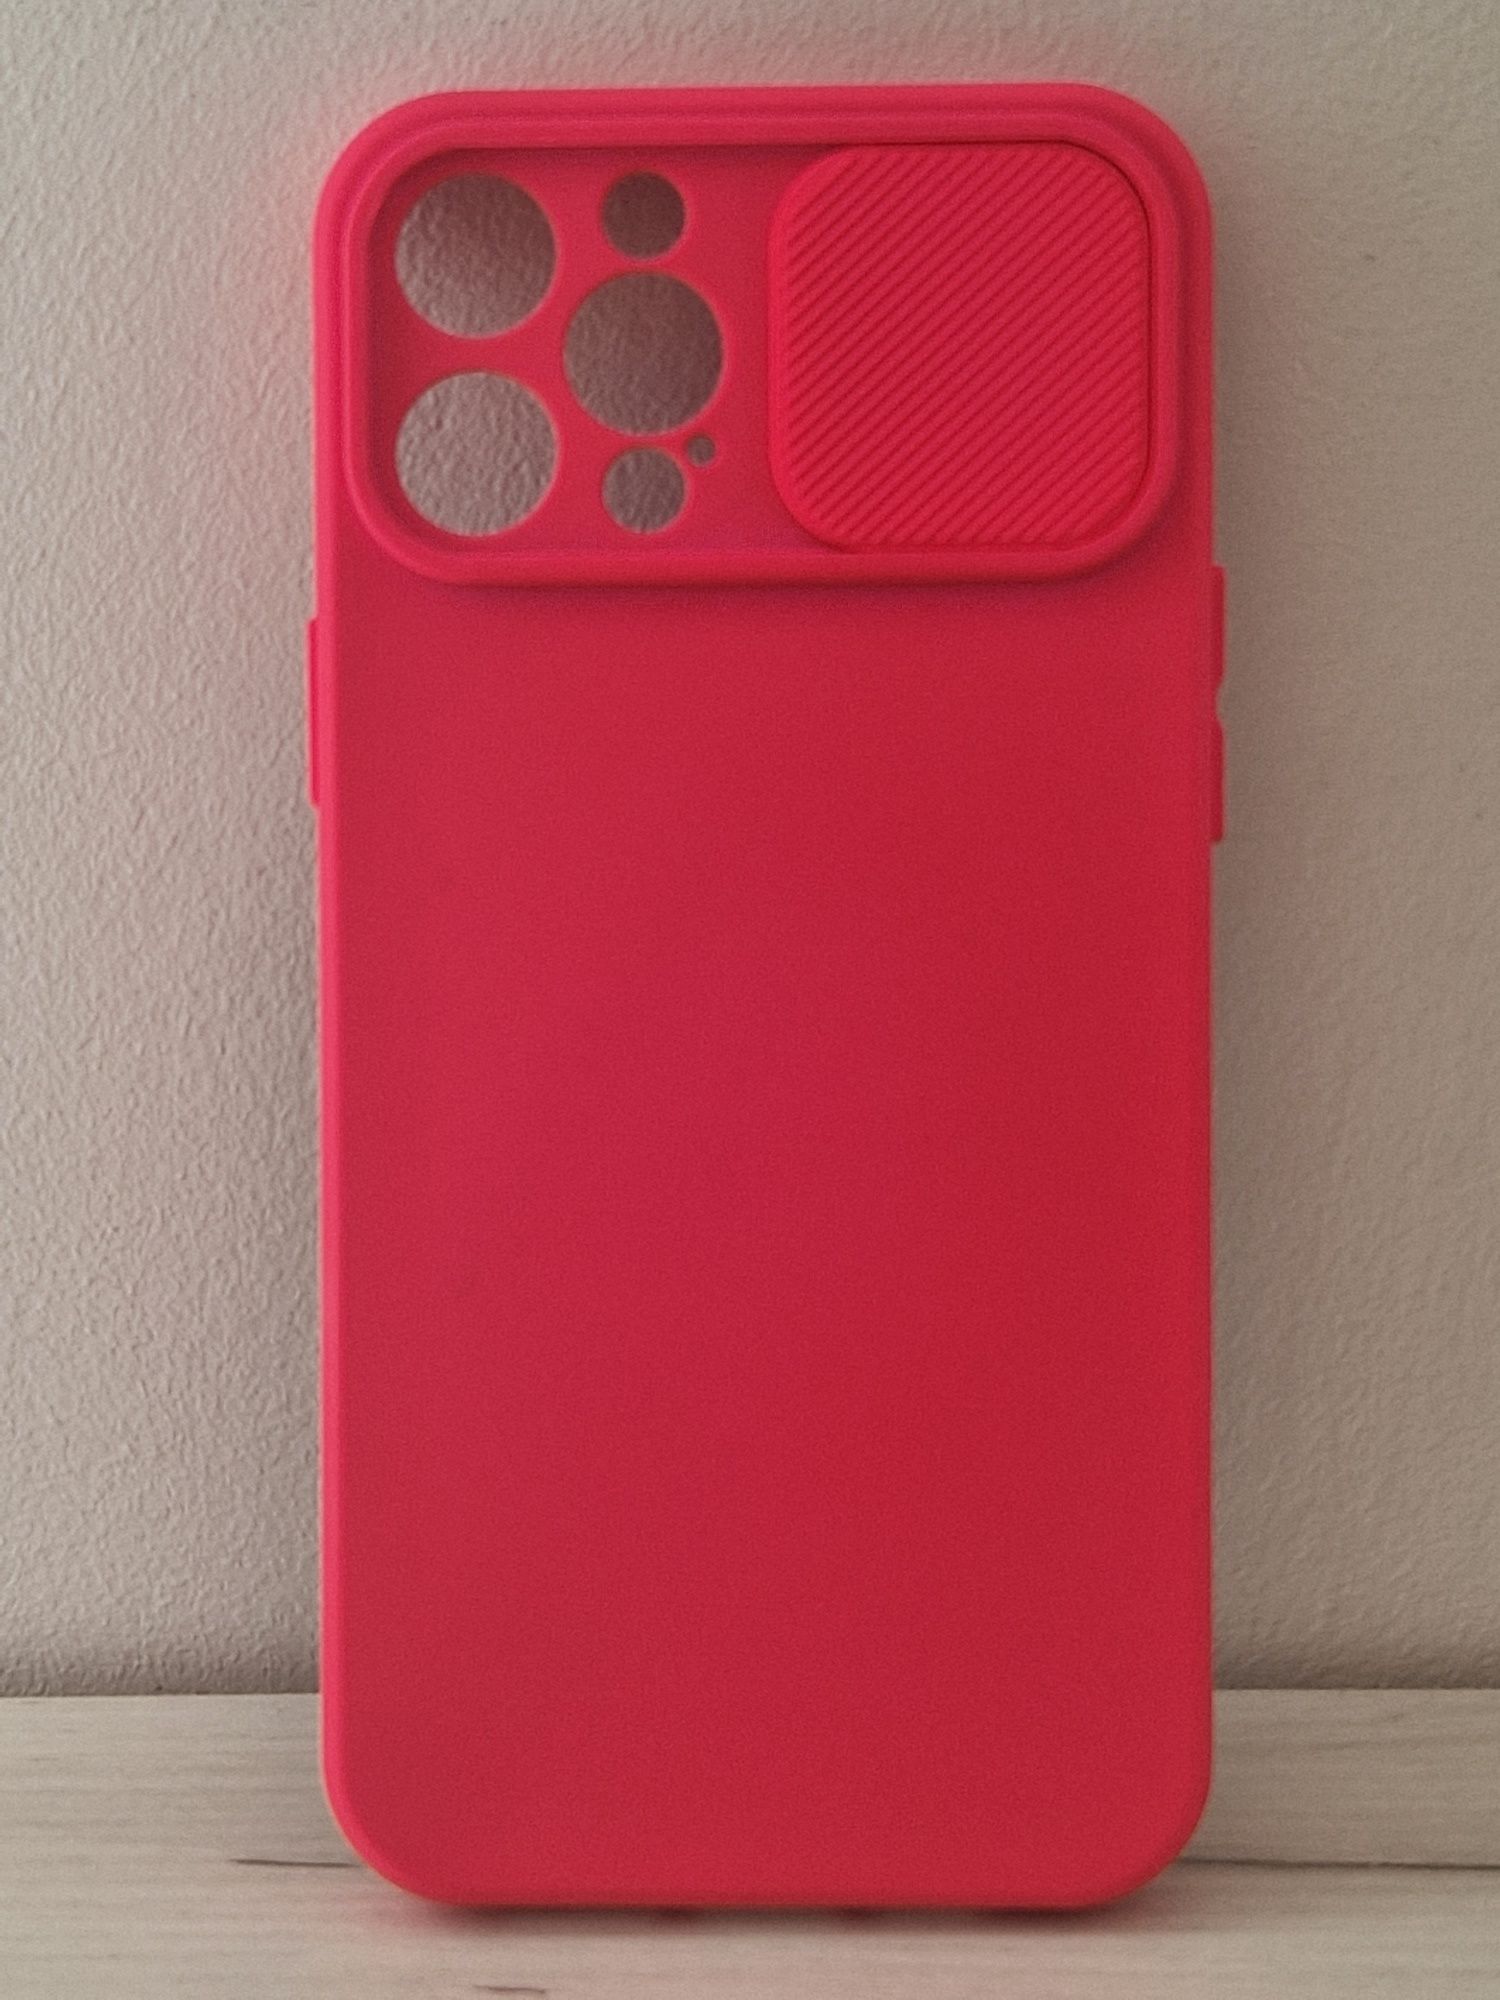 Camshield Soft do Iphone 12 Pro Max Czerwony